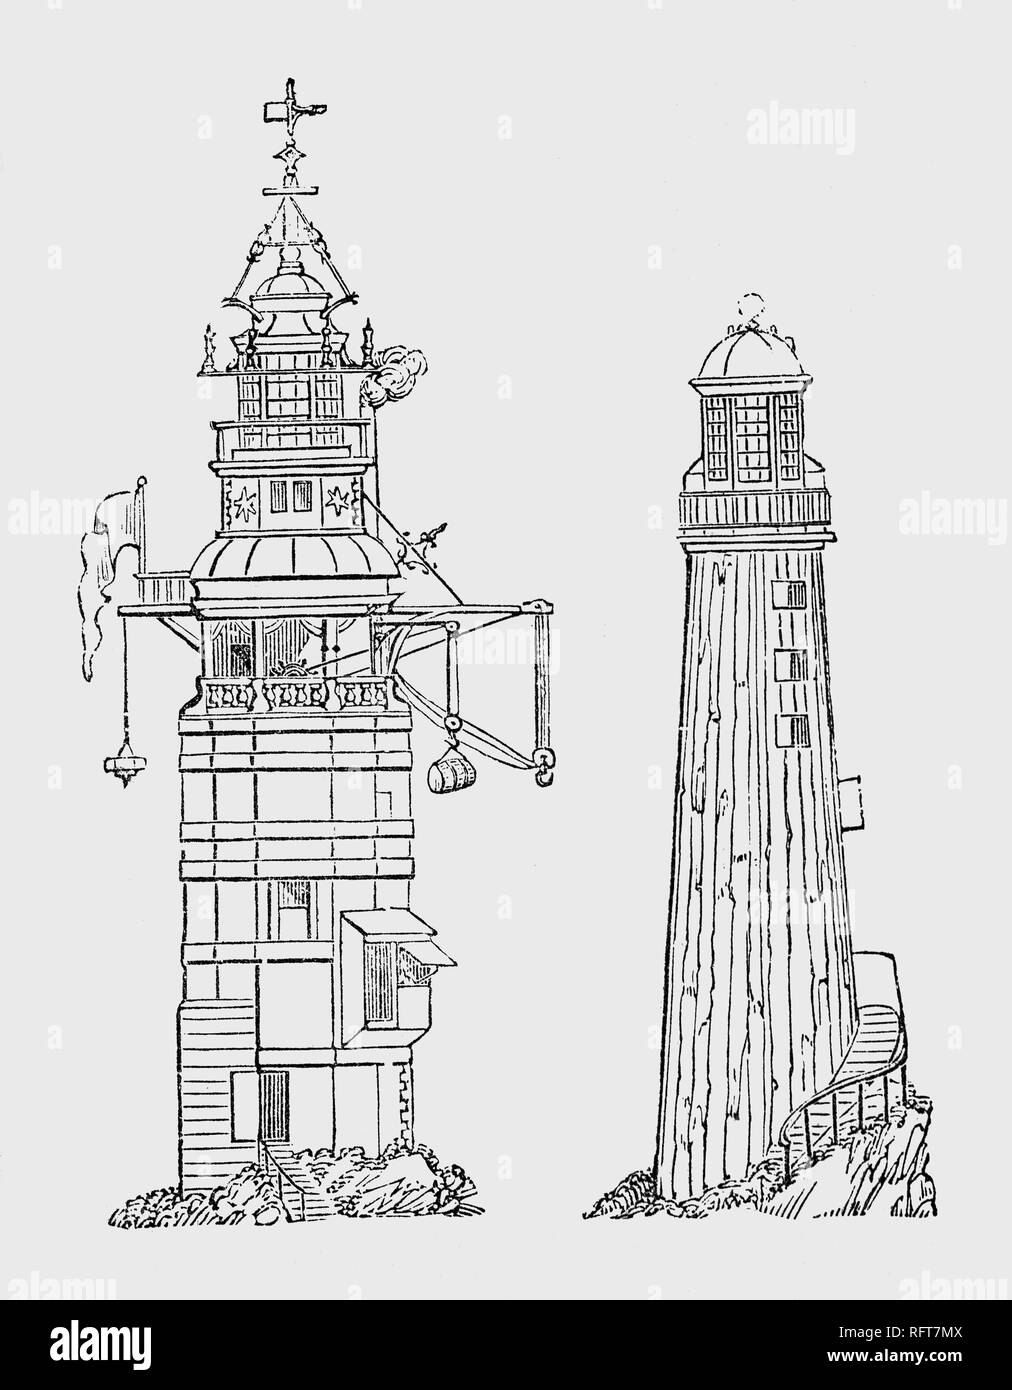 Die Eddystone Lighthouse Design von Henry Winstanley 1644-1703), ein englischer Ingenieur, der die ersten Leuchtturm südlich von Rame Head, England gebaut. Winstanley in kommerziellen Unternehmen in fünf Schiffe investiert, von denen zwei wurden zerstört auf dem Riff. Gesagt, dass es zu gefährlich war, beschloss er, der erste Leuchtturm zu errichten. Die nächste Zeichnung ist die dritte eddystone Leuchtturm auf der gefährlichen Eddystone Felsen, südlich von Rame Head, England. Mit Granit Blöcke von der Königlichen Gesellschaft entworfen, zivil Ingenieur John Smeaton Stockfoto